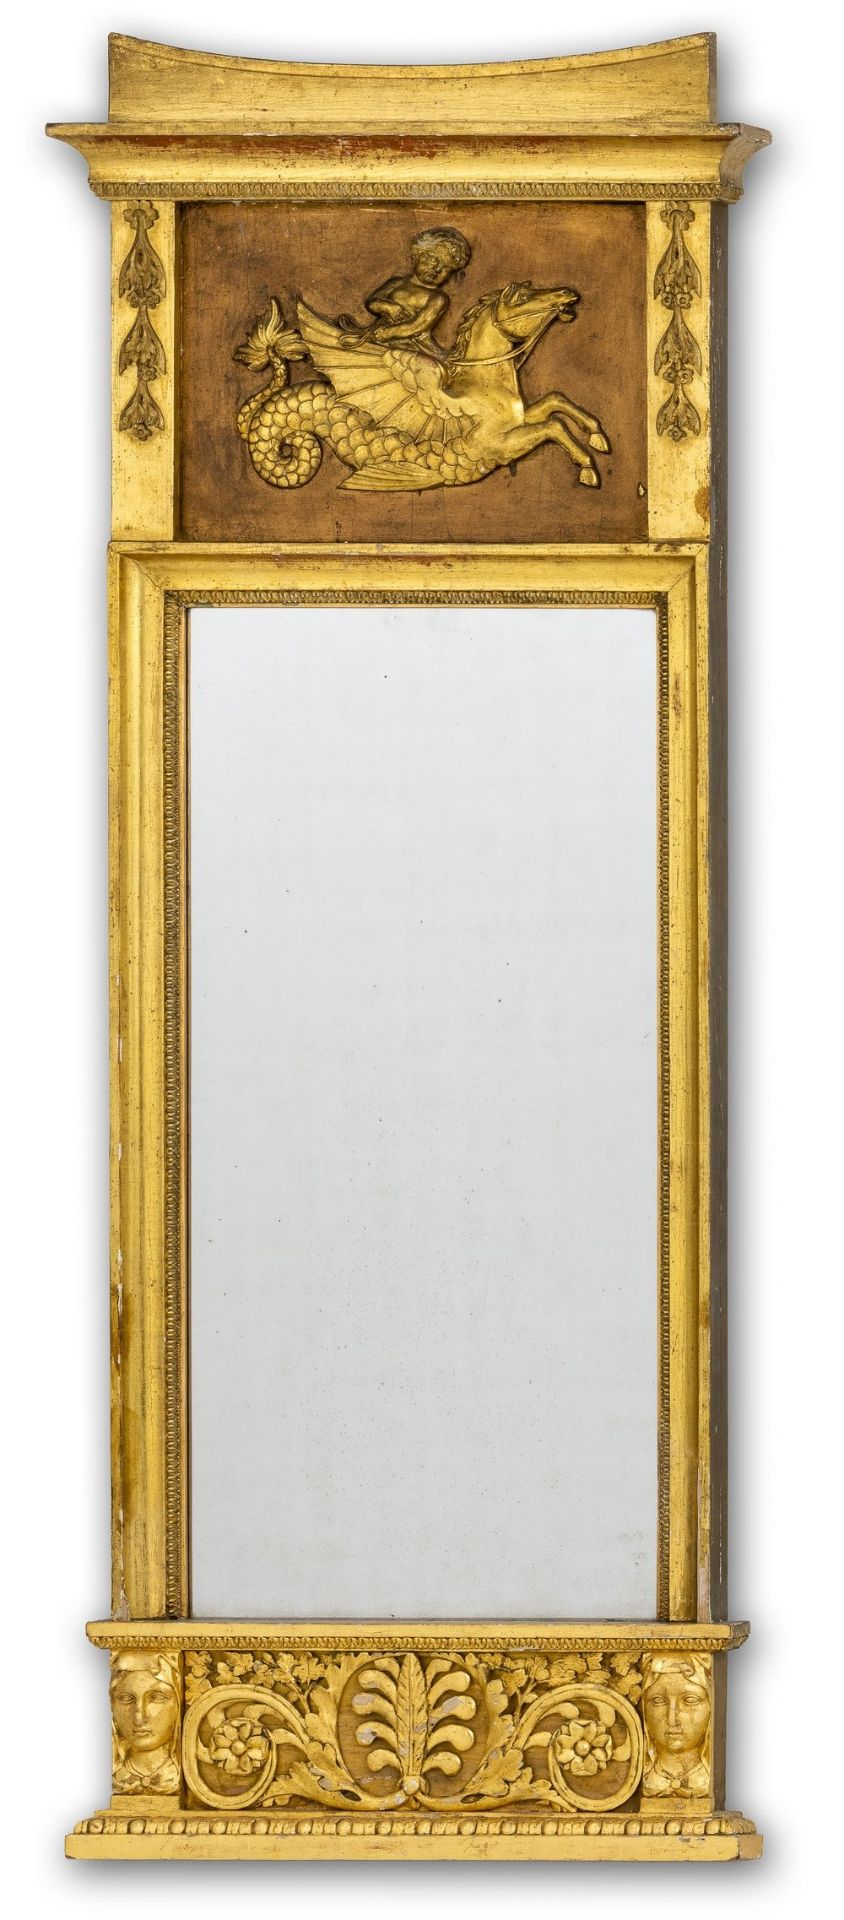 Klassizistischer Spiegel Norddeutsch, um 1820-30